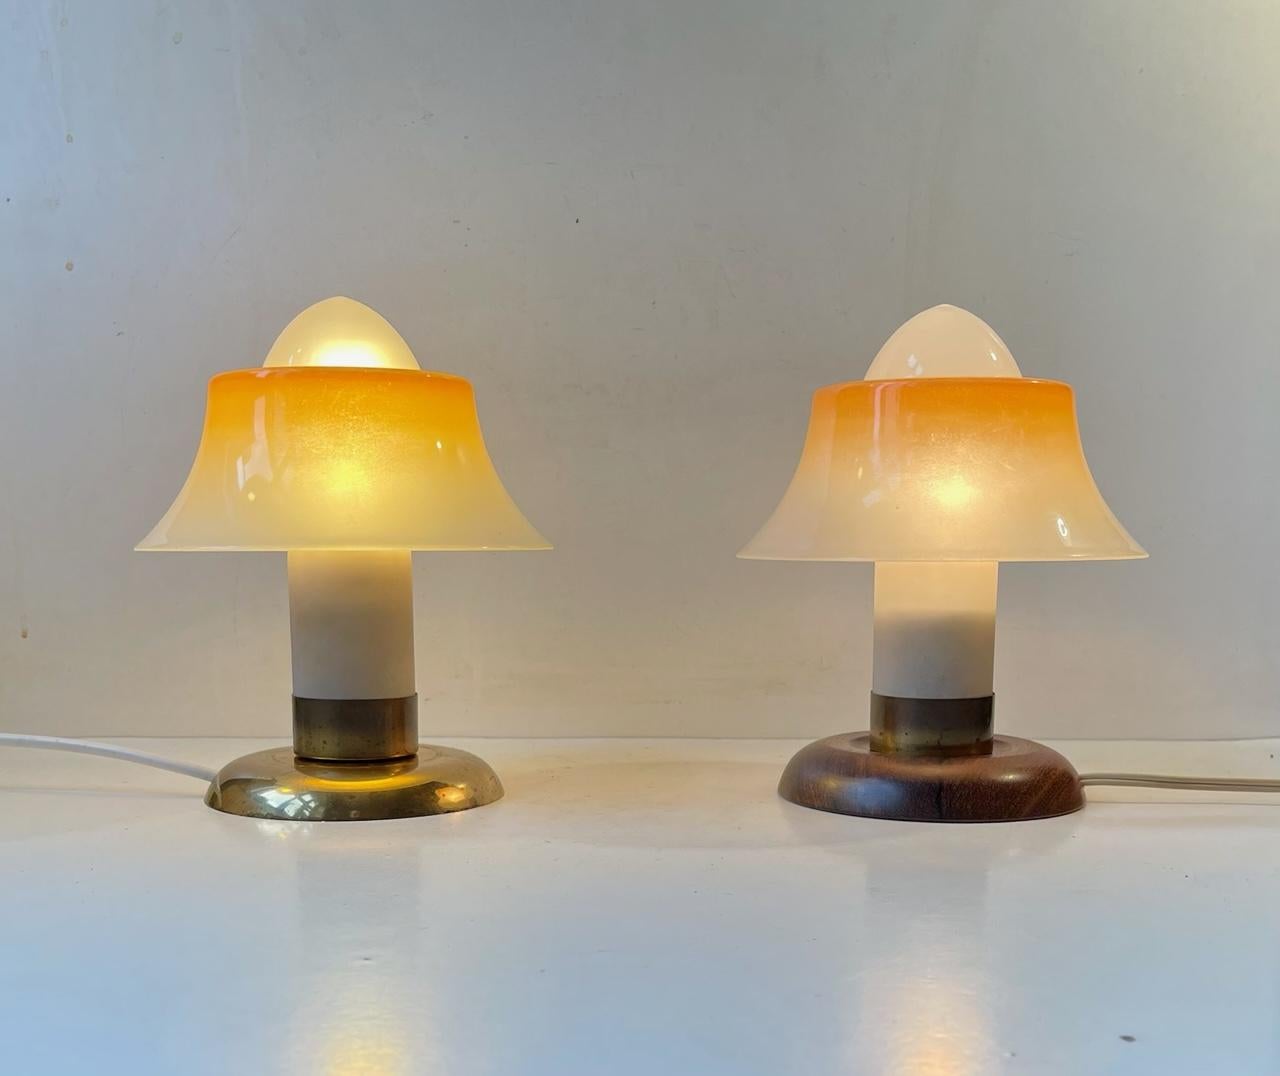 Danish Fog & Mørup Small Fried-Egg Table Lamps, Denmark 1950s For Sale